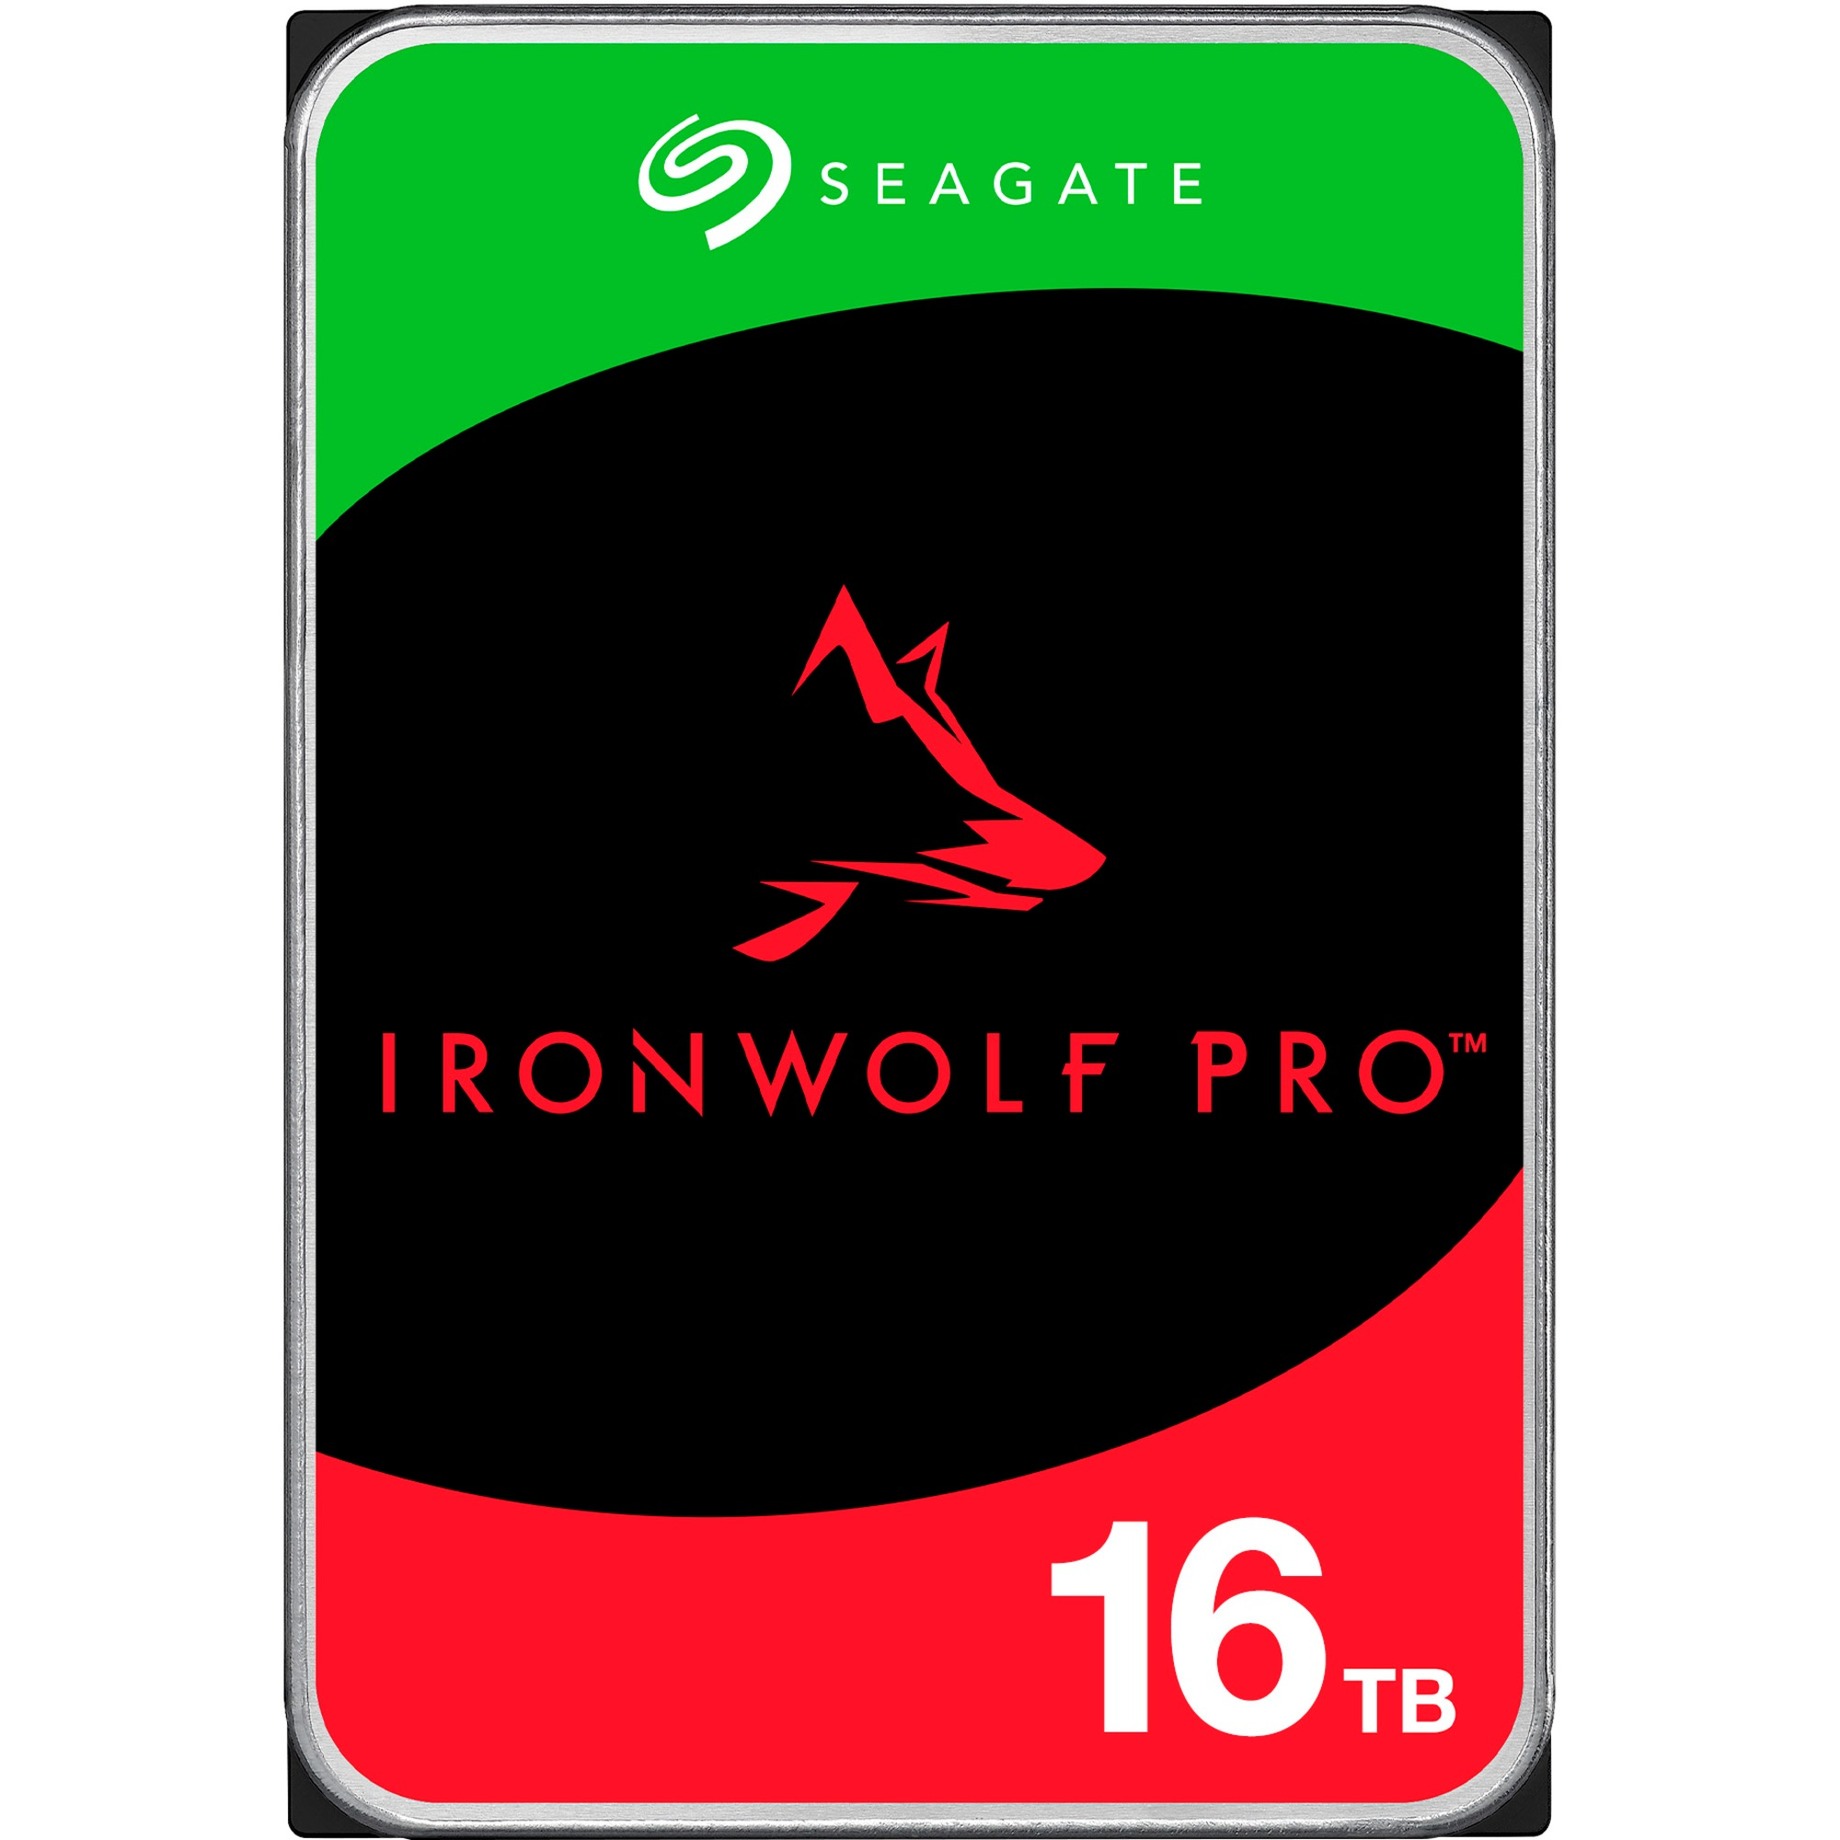 IronWolf Pro NAS 16 TB CMR, Festplatte von Seagate